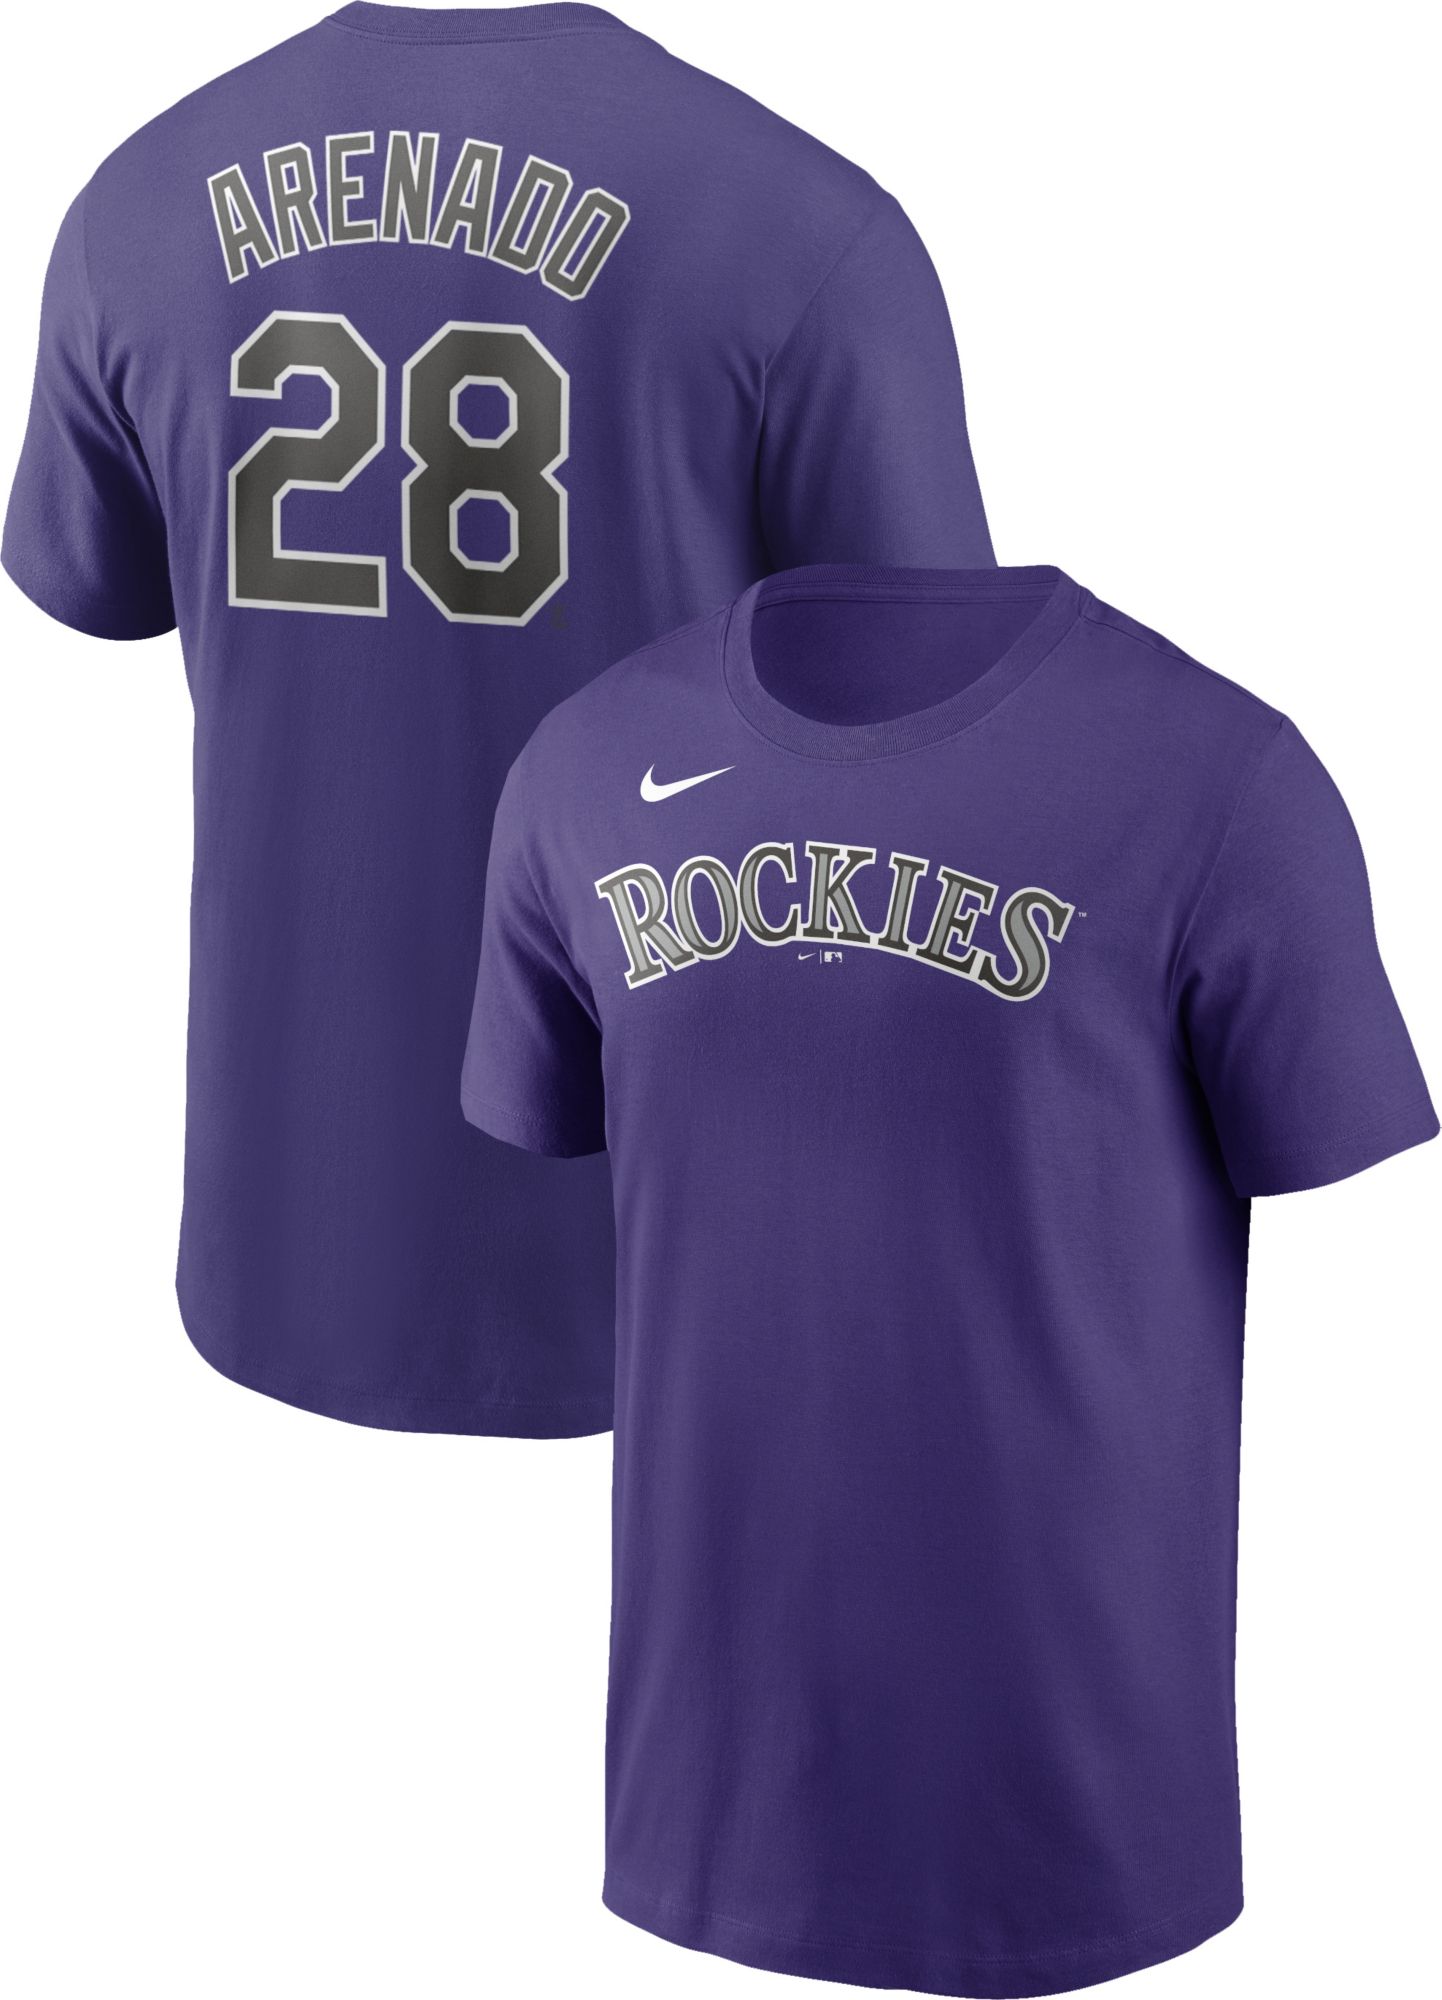 rockies purple jersey